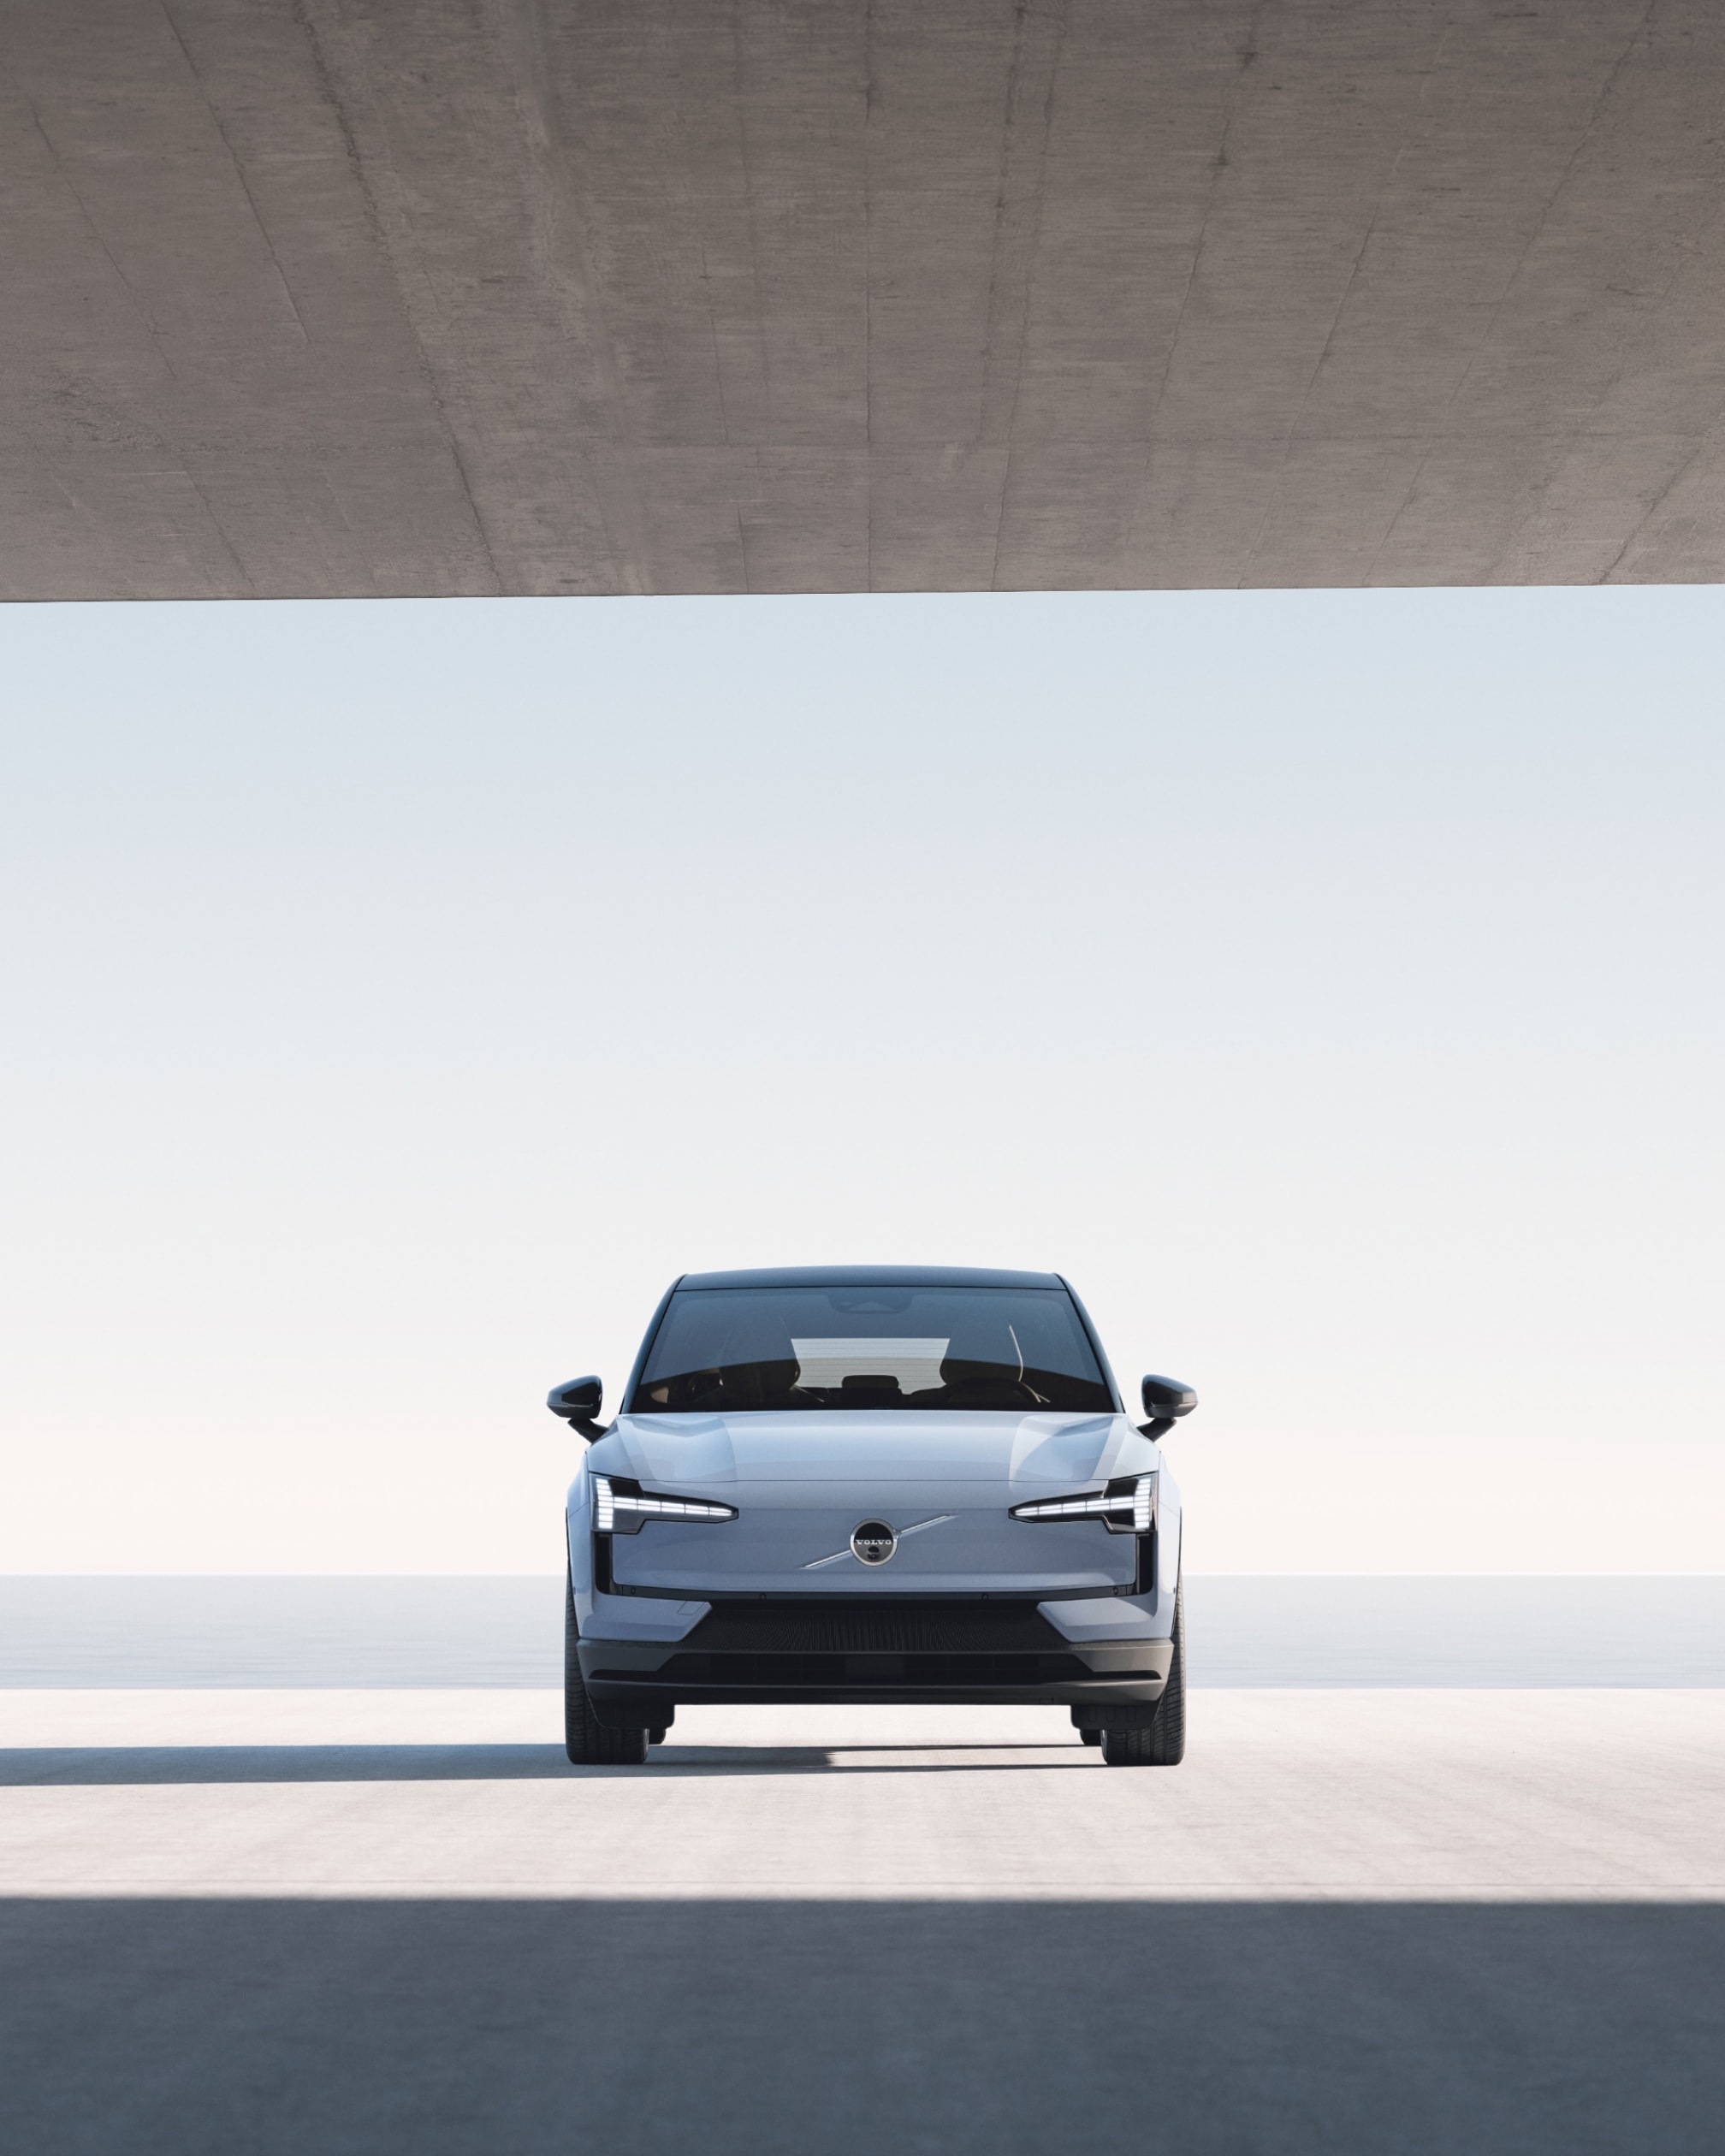 Ширококутне фронтальне зображення автомобіля Volvo EX30, припаркованого у великій бетонній споруді, з видом на воду.